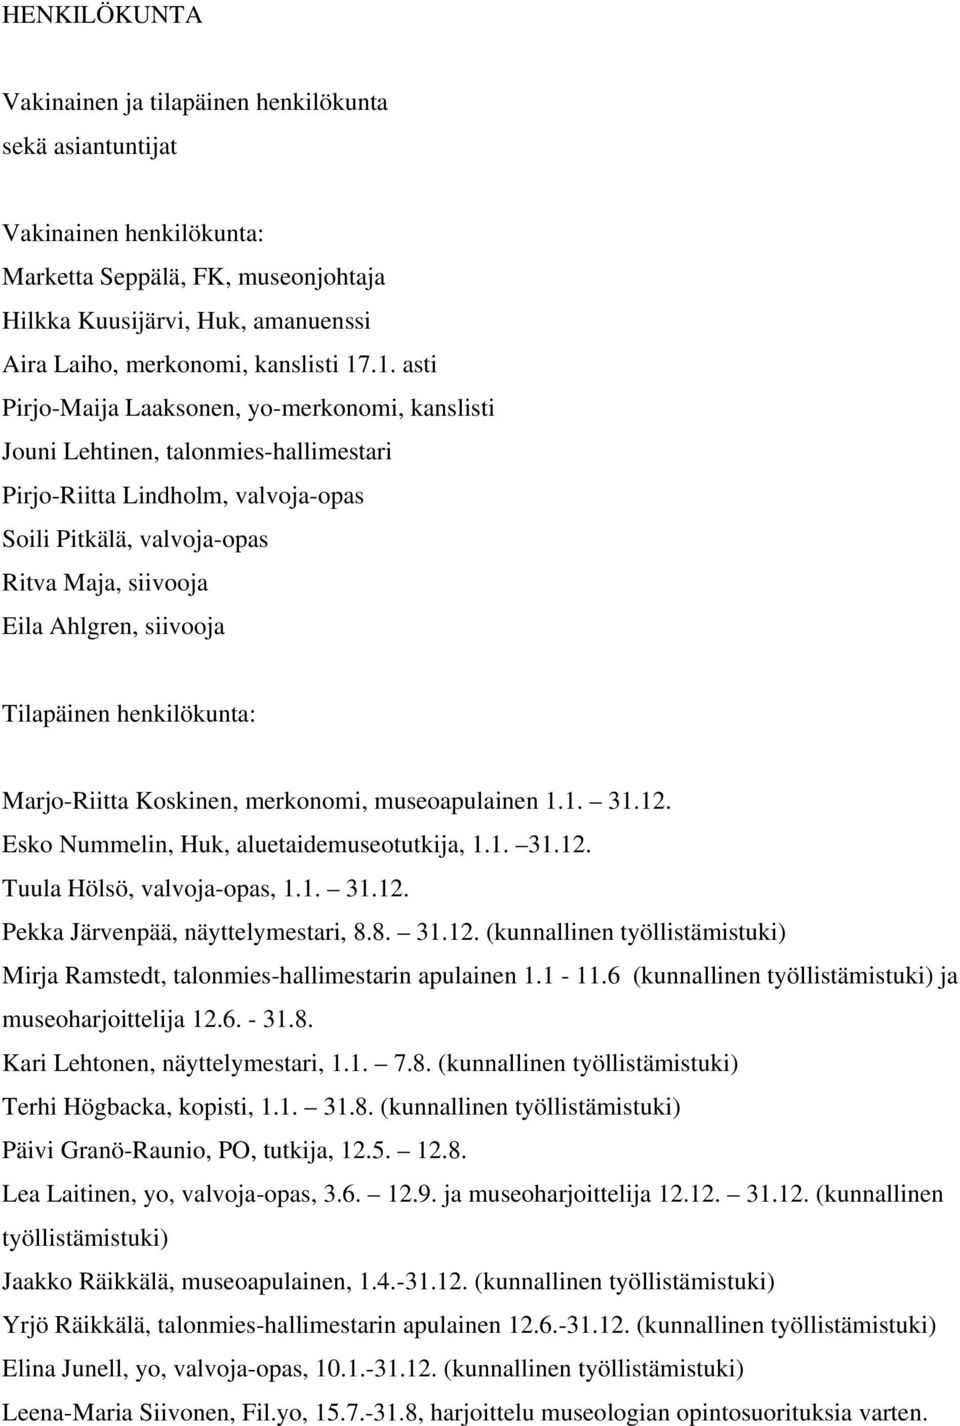 siivooja Tilapäinen henkilökunta: Marjo-Riitta Koskinen, merkonomi, museoapulainen 1.1. 31.12. Esko Nummelin, Huk, aluetaidemuseotutkija, 1.1. 31.12. Tuula Hölsö, valvoja-opas, 1.1. 31.12. Pekka Järvenpää, näyttelymestari, 8.